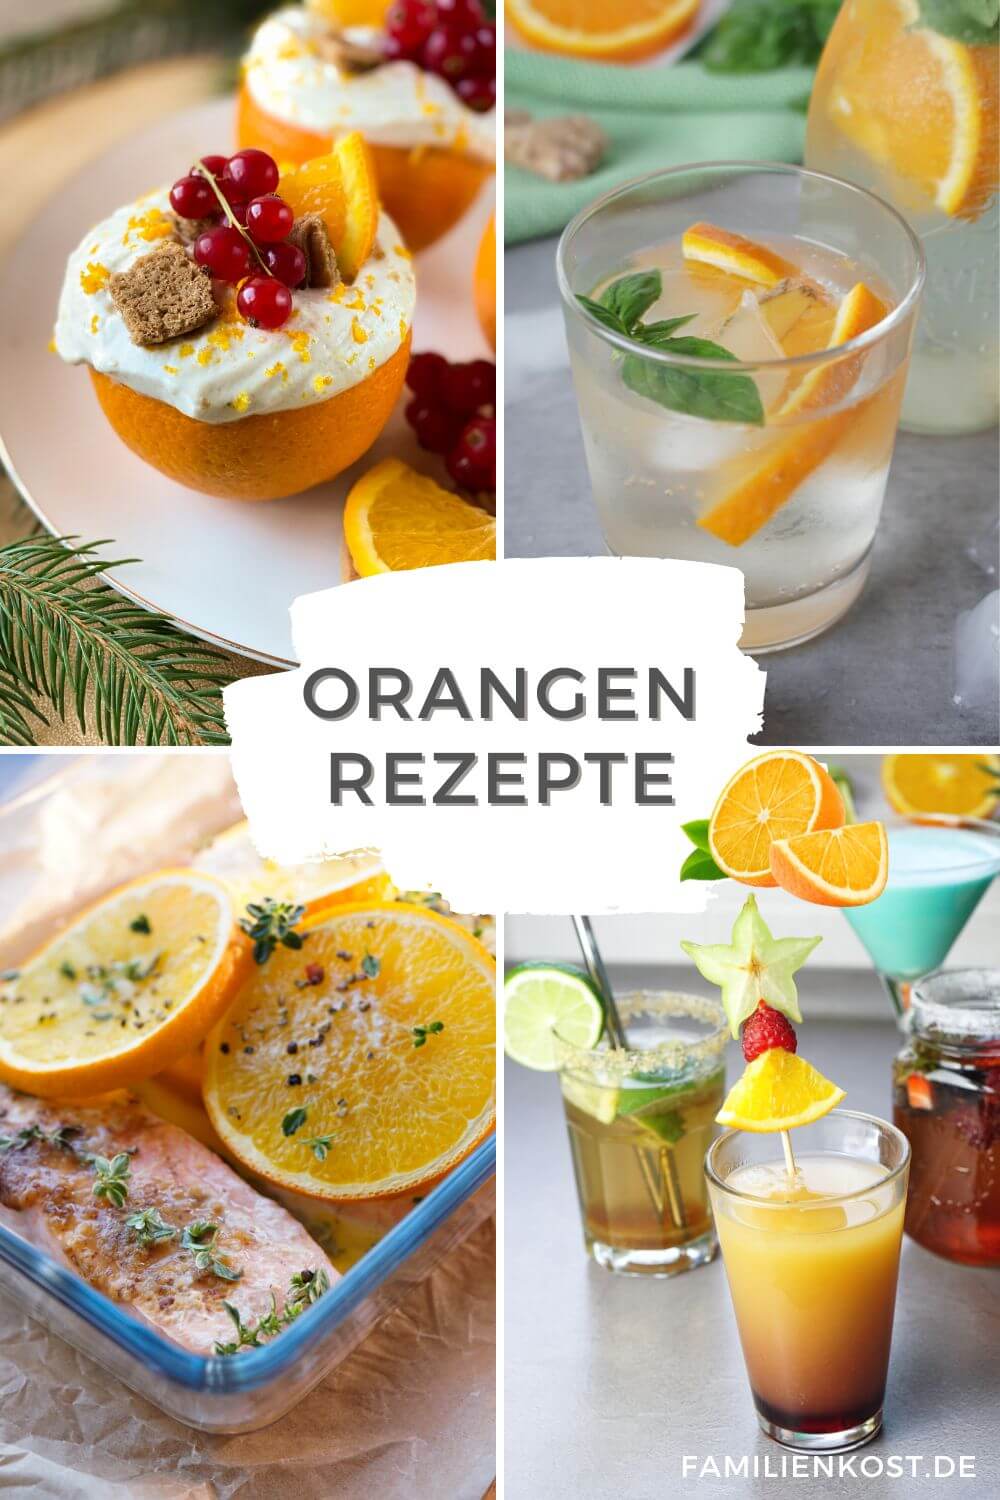 Orangen Rezepte